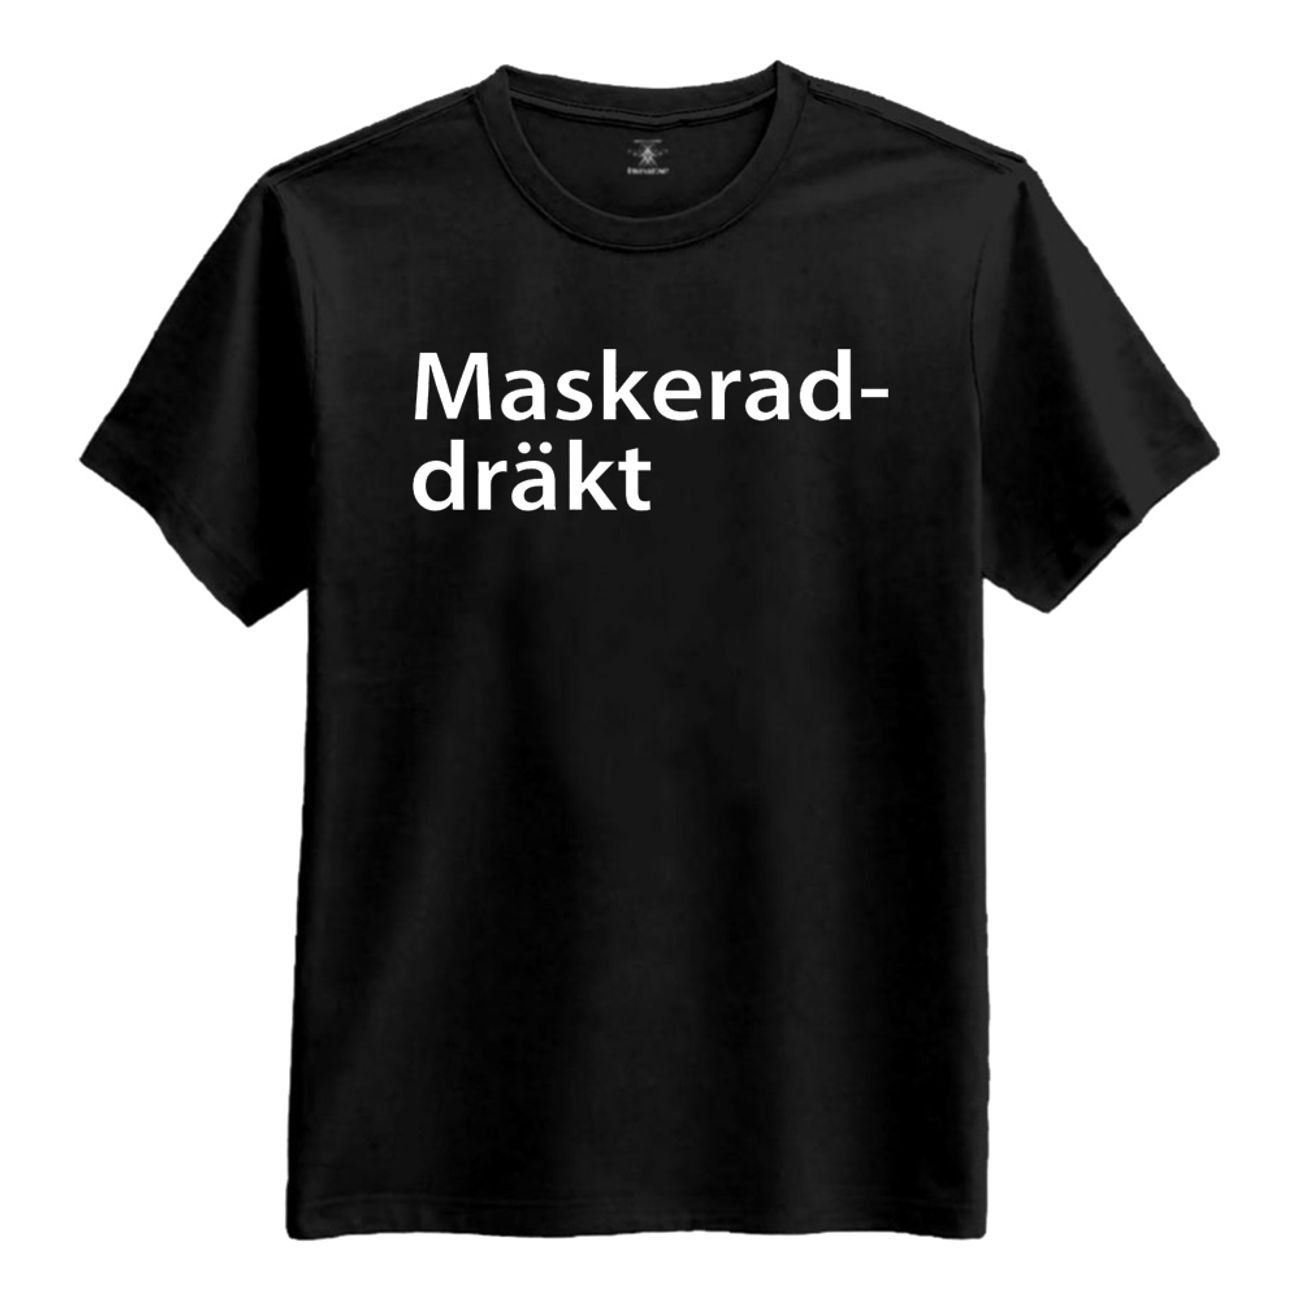 maskeraddrakt-t-shirt-3